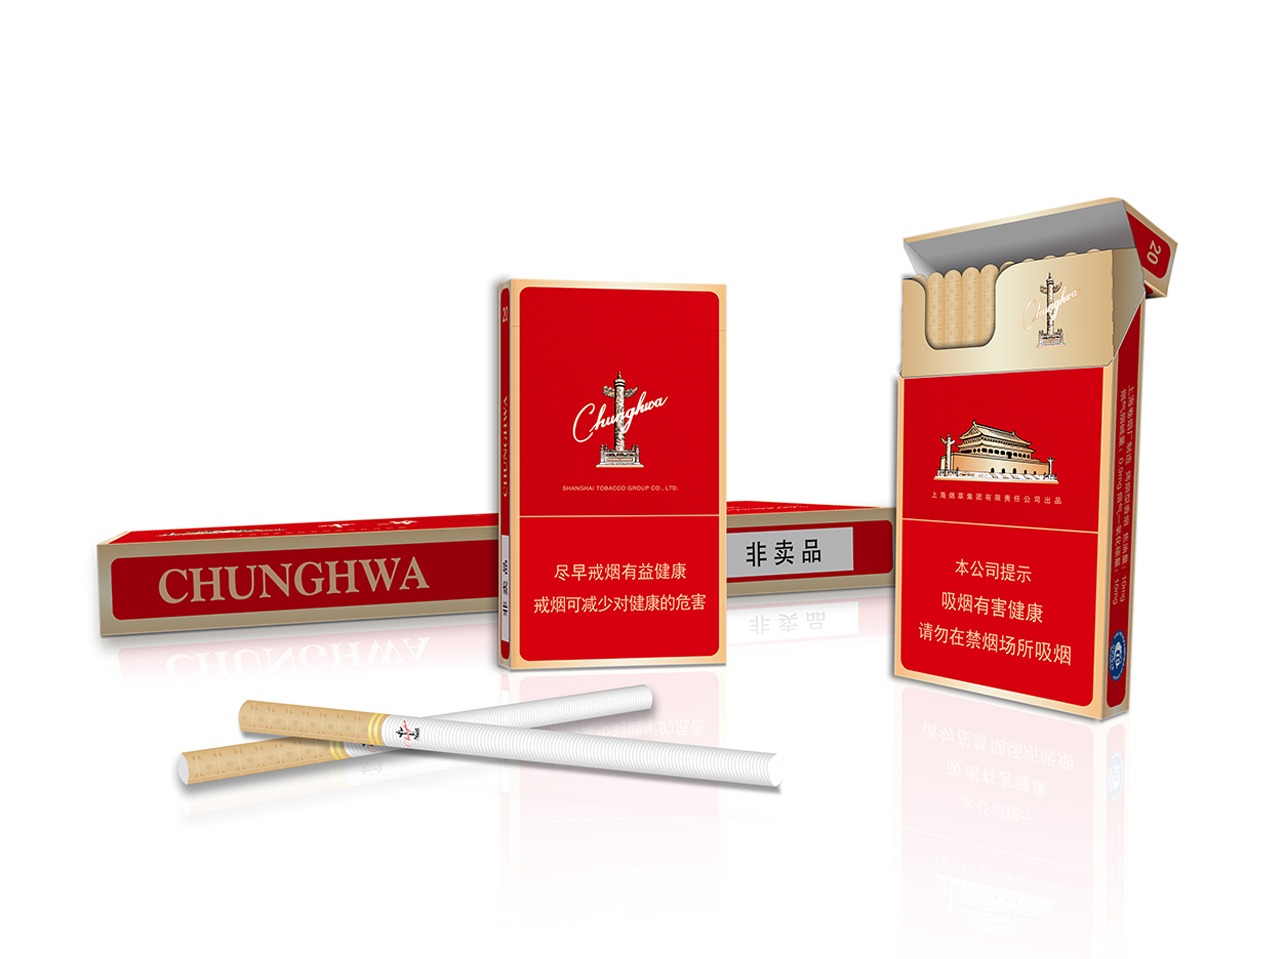 中华烟盒子图片,中华烟图片 - 伤感说说吧